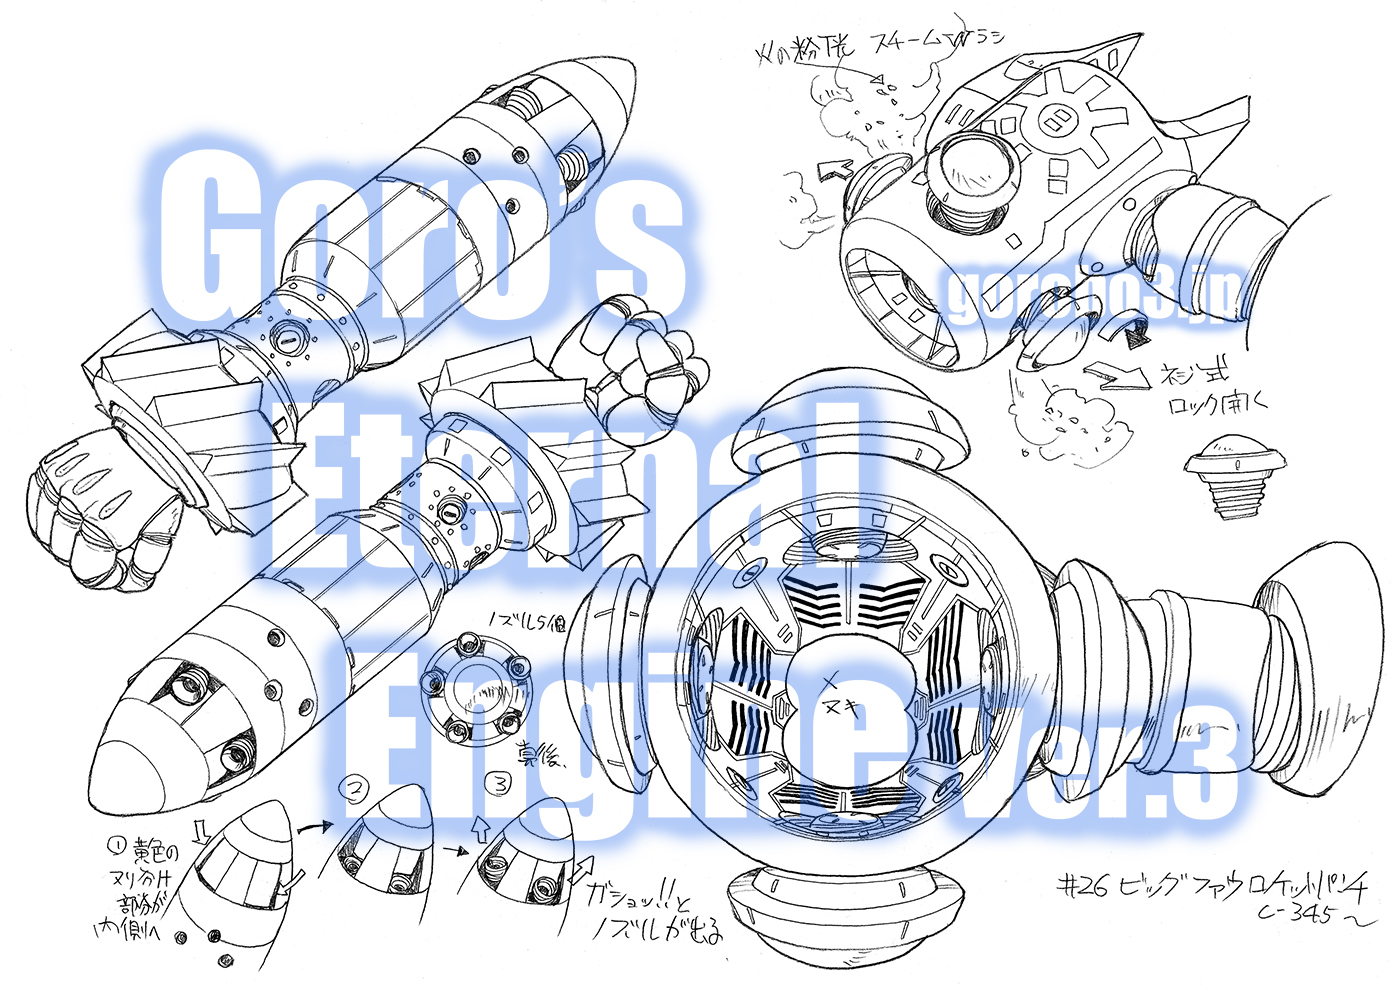 THE ビッグオー・26話-2 – Goro's Eternal Engine 3 (Goro MURATA's art works Ver.3)